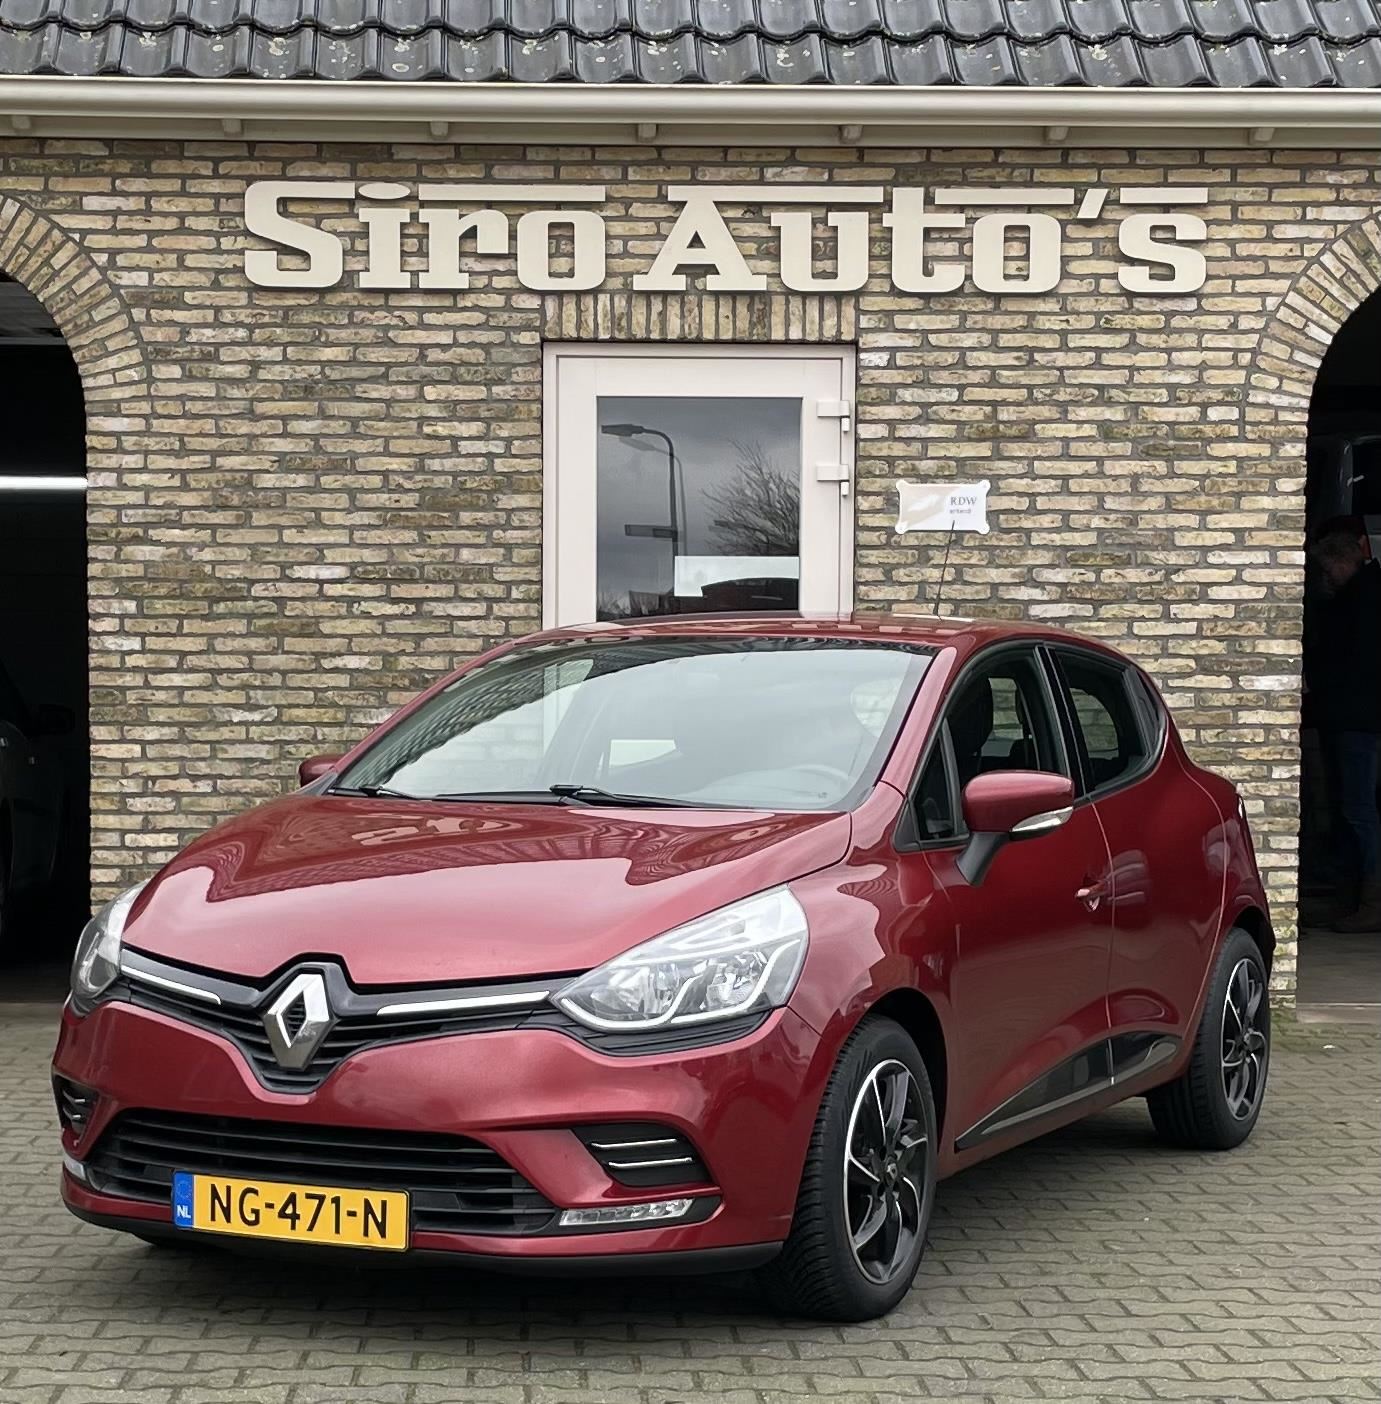 Verhoogd Verdikken Regenachtig Renault Clio - 0.9 TCe Zen Bj 2017 zeer nette auto Benzine uit 2017 -  www.siro-auto.nl